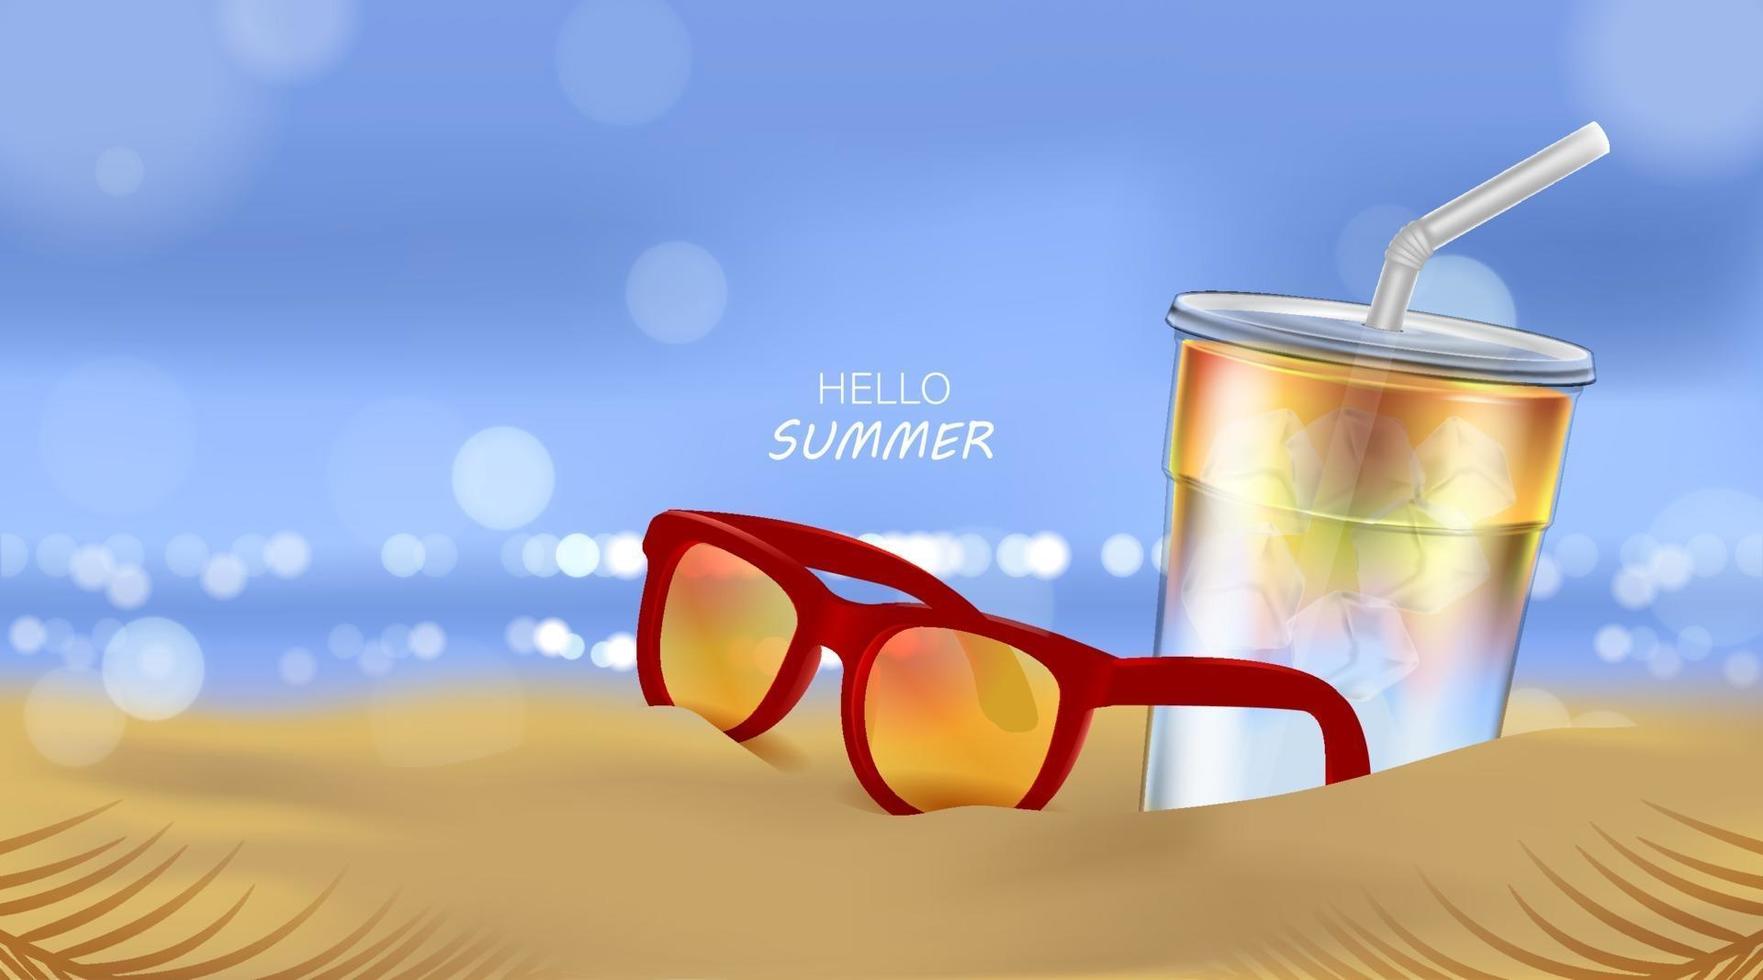 sommarstrand och havssolljus, läskcocktail och solglasögon på strandbakgrund i illustration 3d vektor